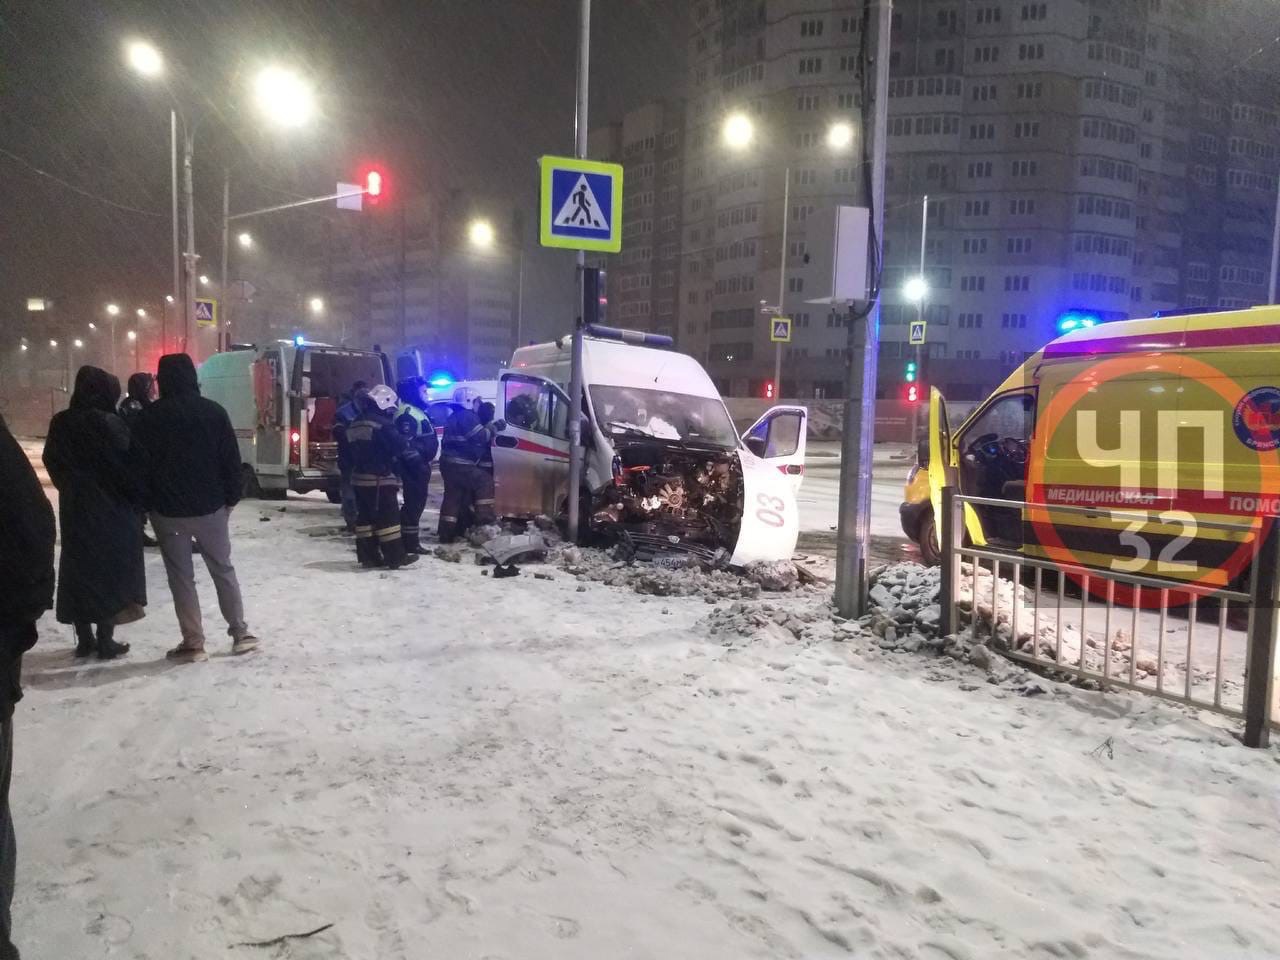 Автомобиль скорой помощи разбился в аварии в Брянске, есть пострадавшие